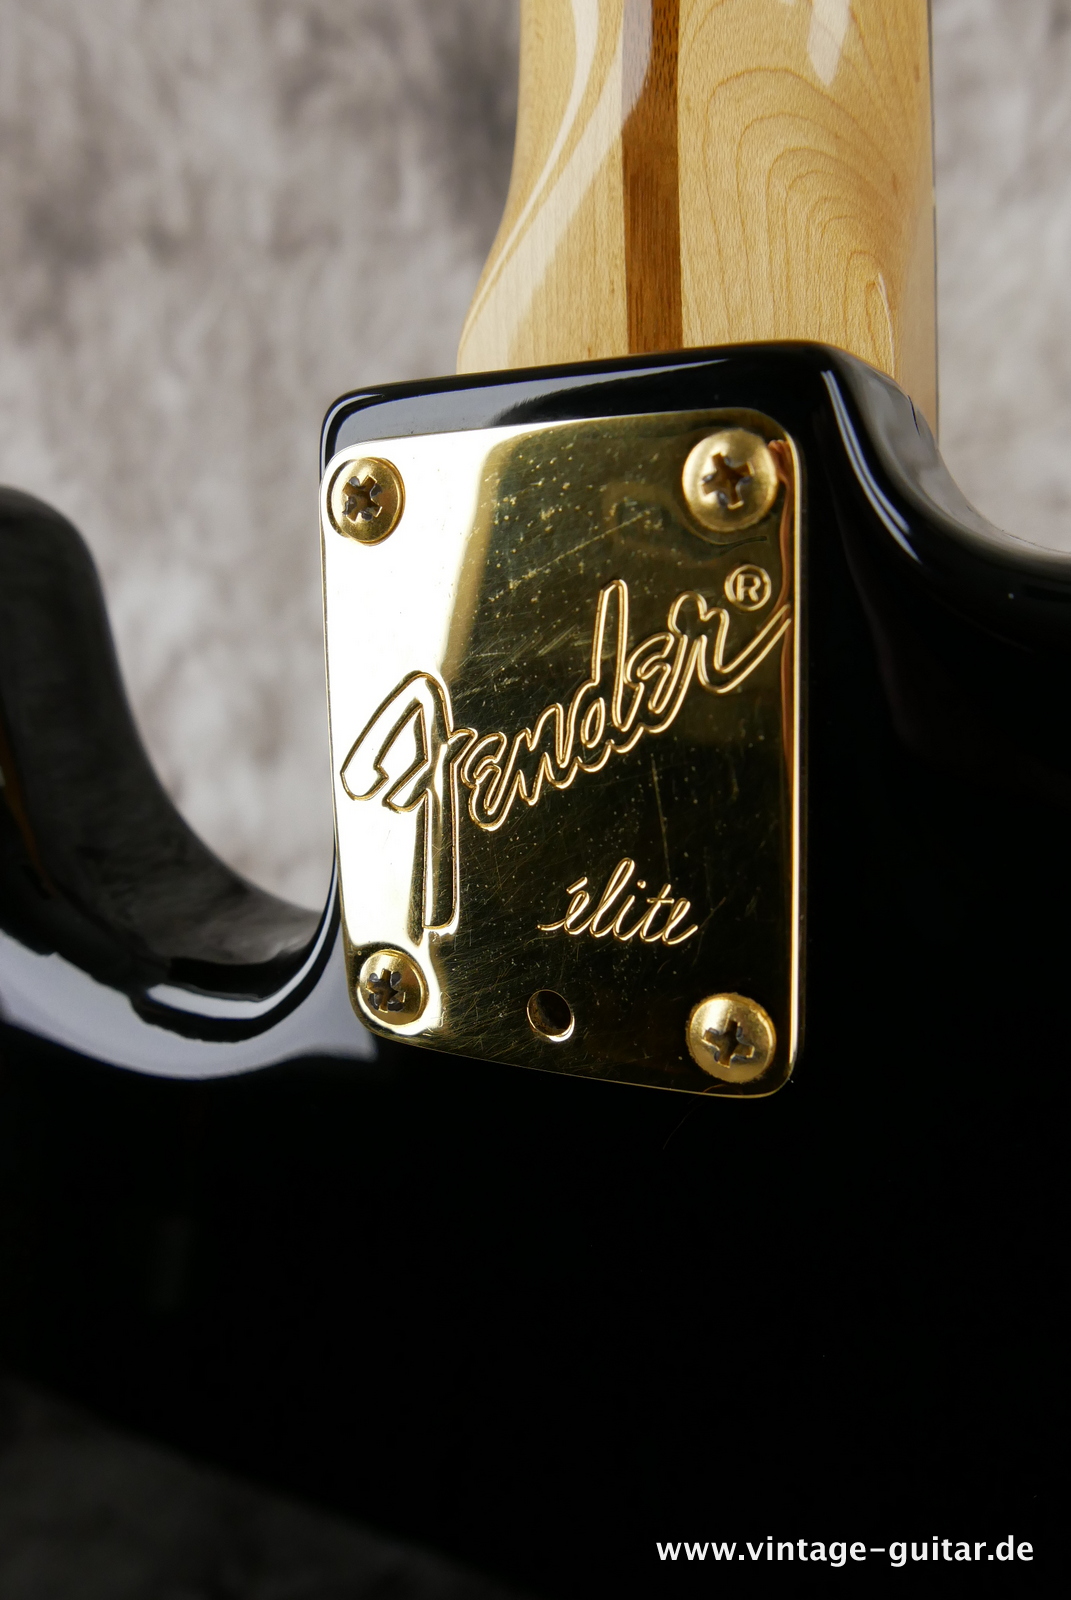 Fender_Stratocaster_elite_USA_black_1983-013.JPG